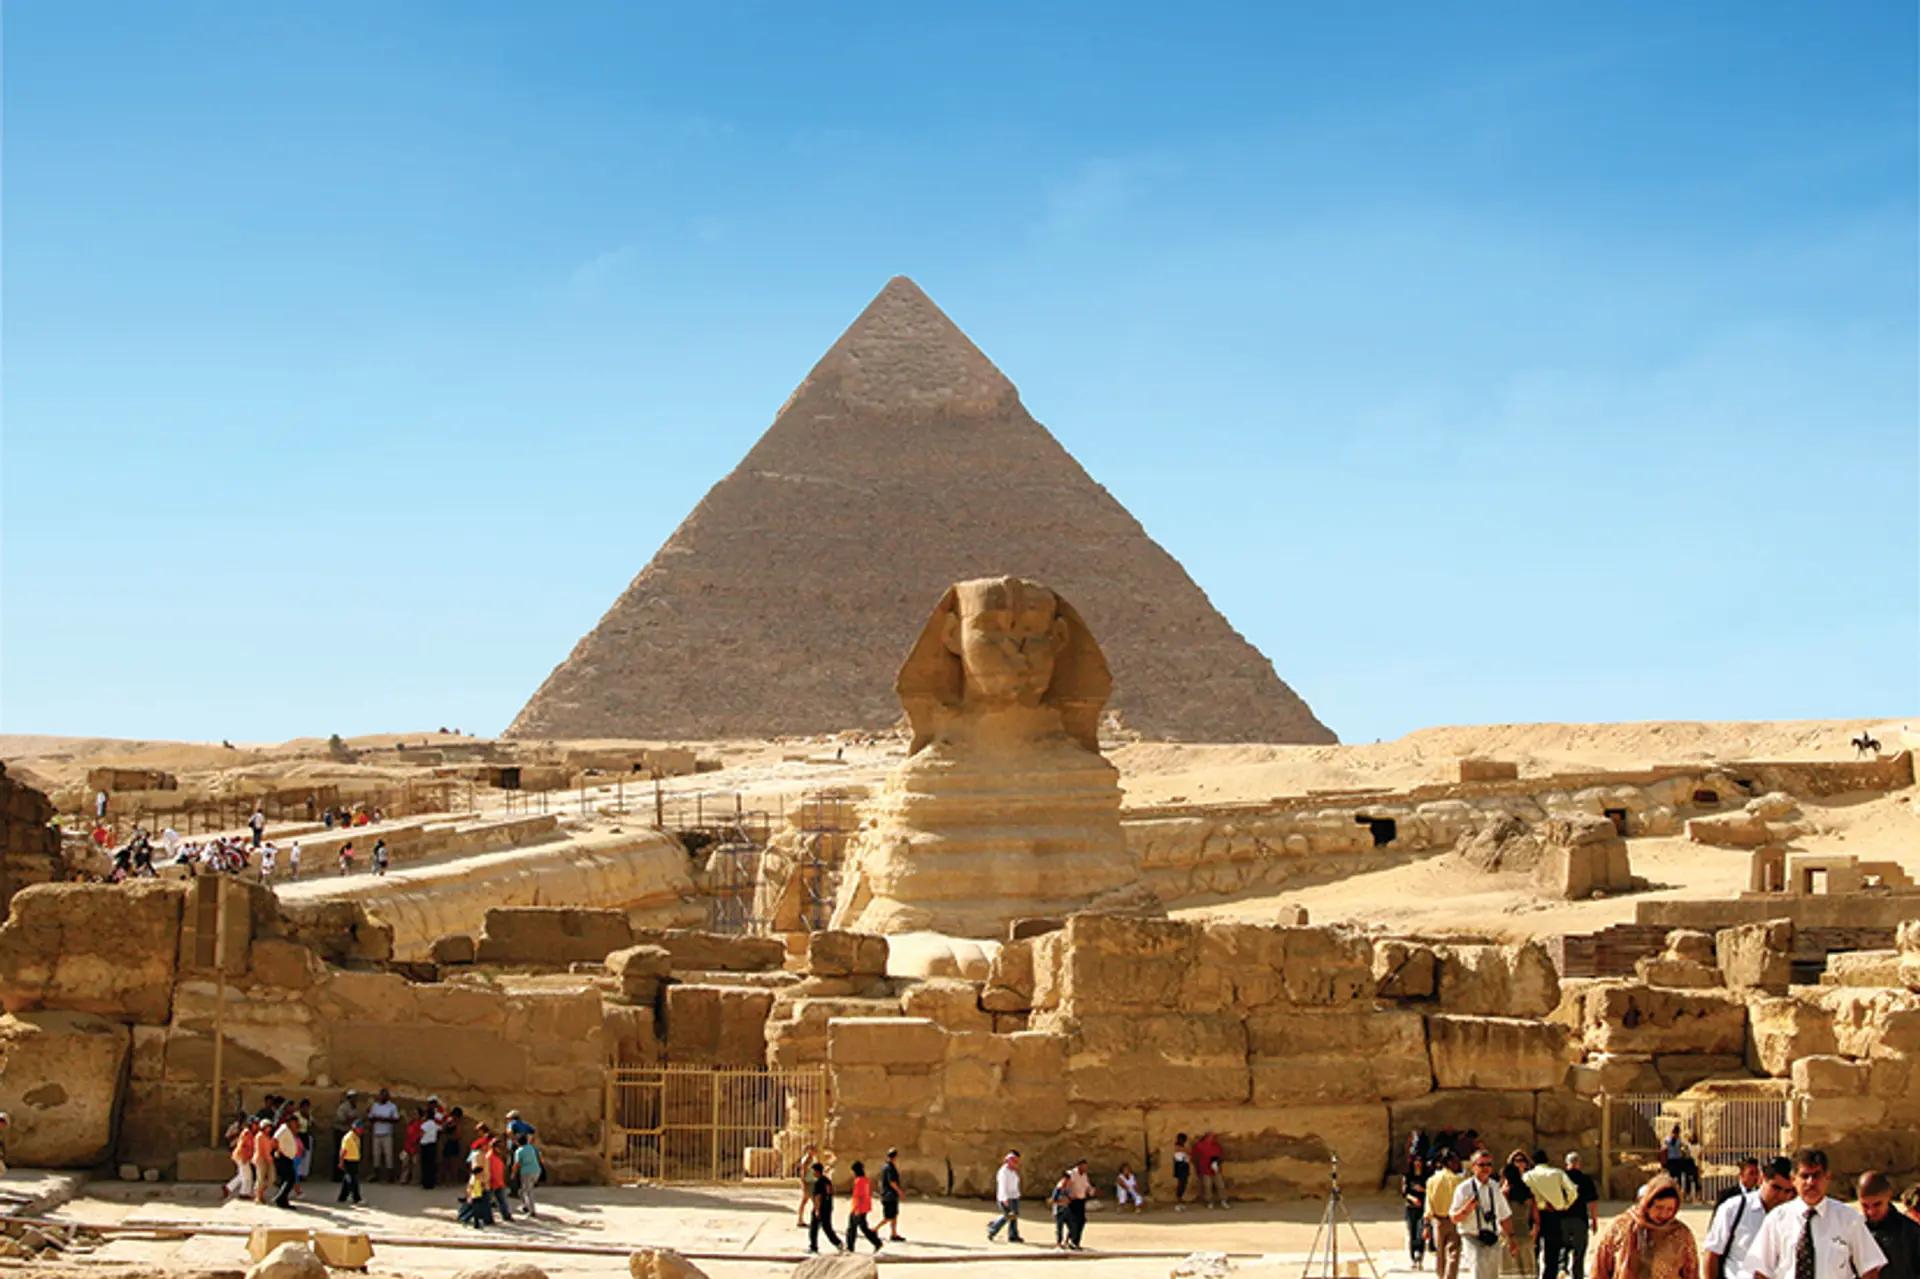 Selon Zahi Hawass, ancien ministre d’État égyptien chargé des antiquités, la quasi-totalité des sites archéologiques en plein air en Égypte sont gravement menacés. Photo : Daniel Fleck